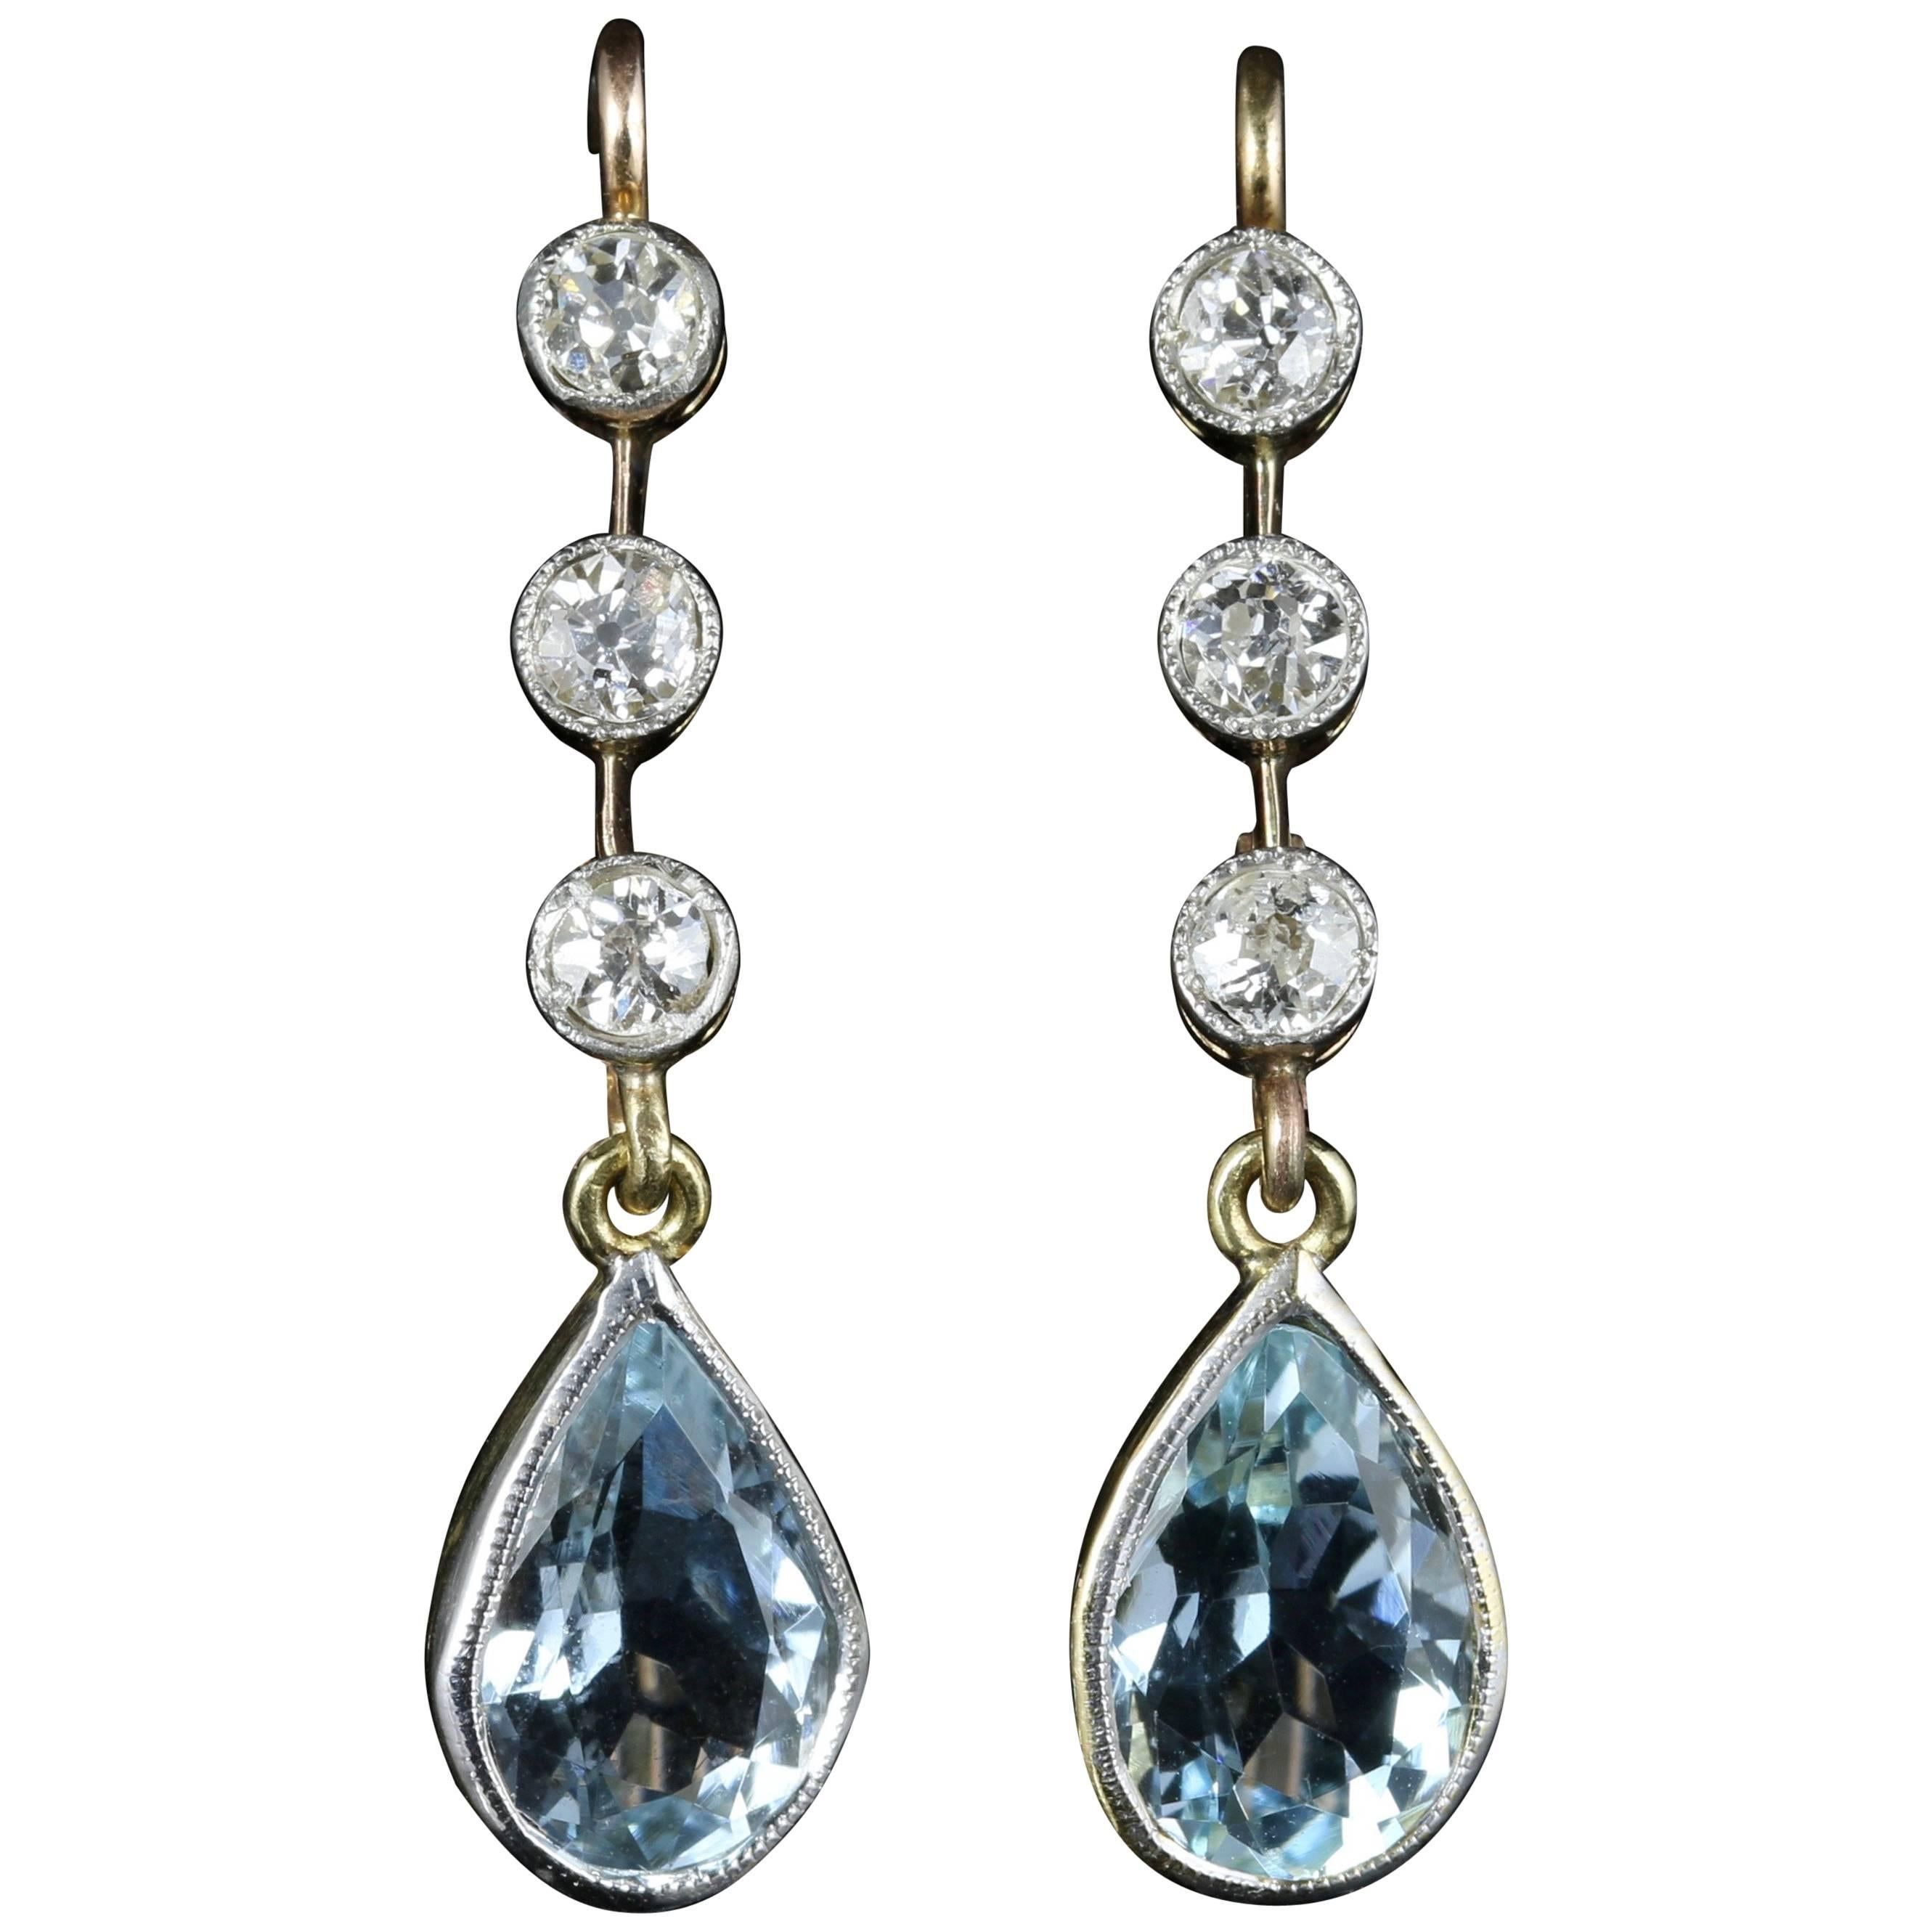 Antique Victorian Aquamarine Diamond Earrings 18 Carat Gold, circa 1900